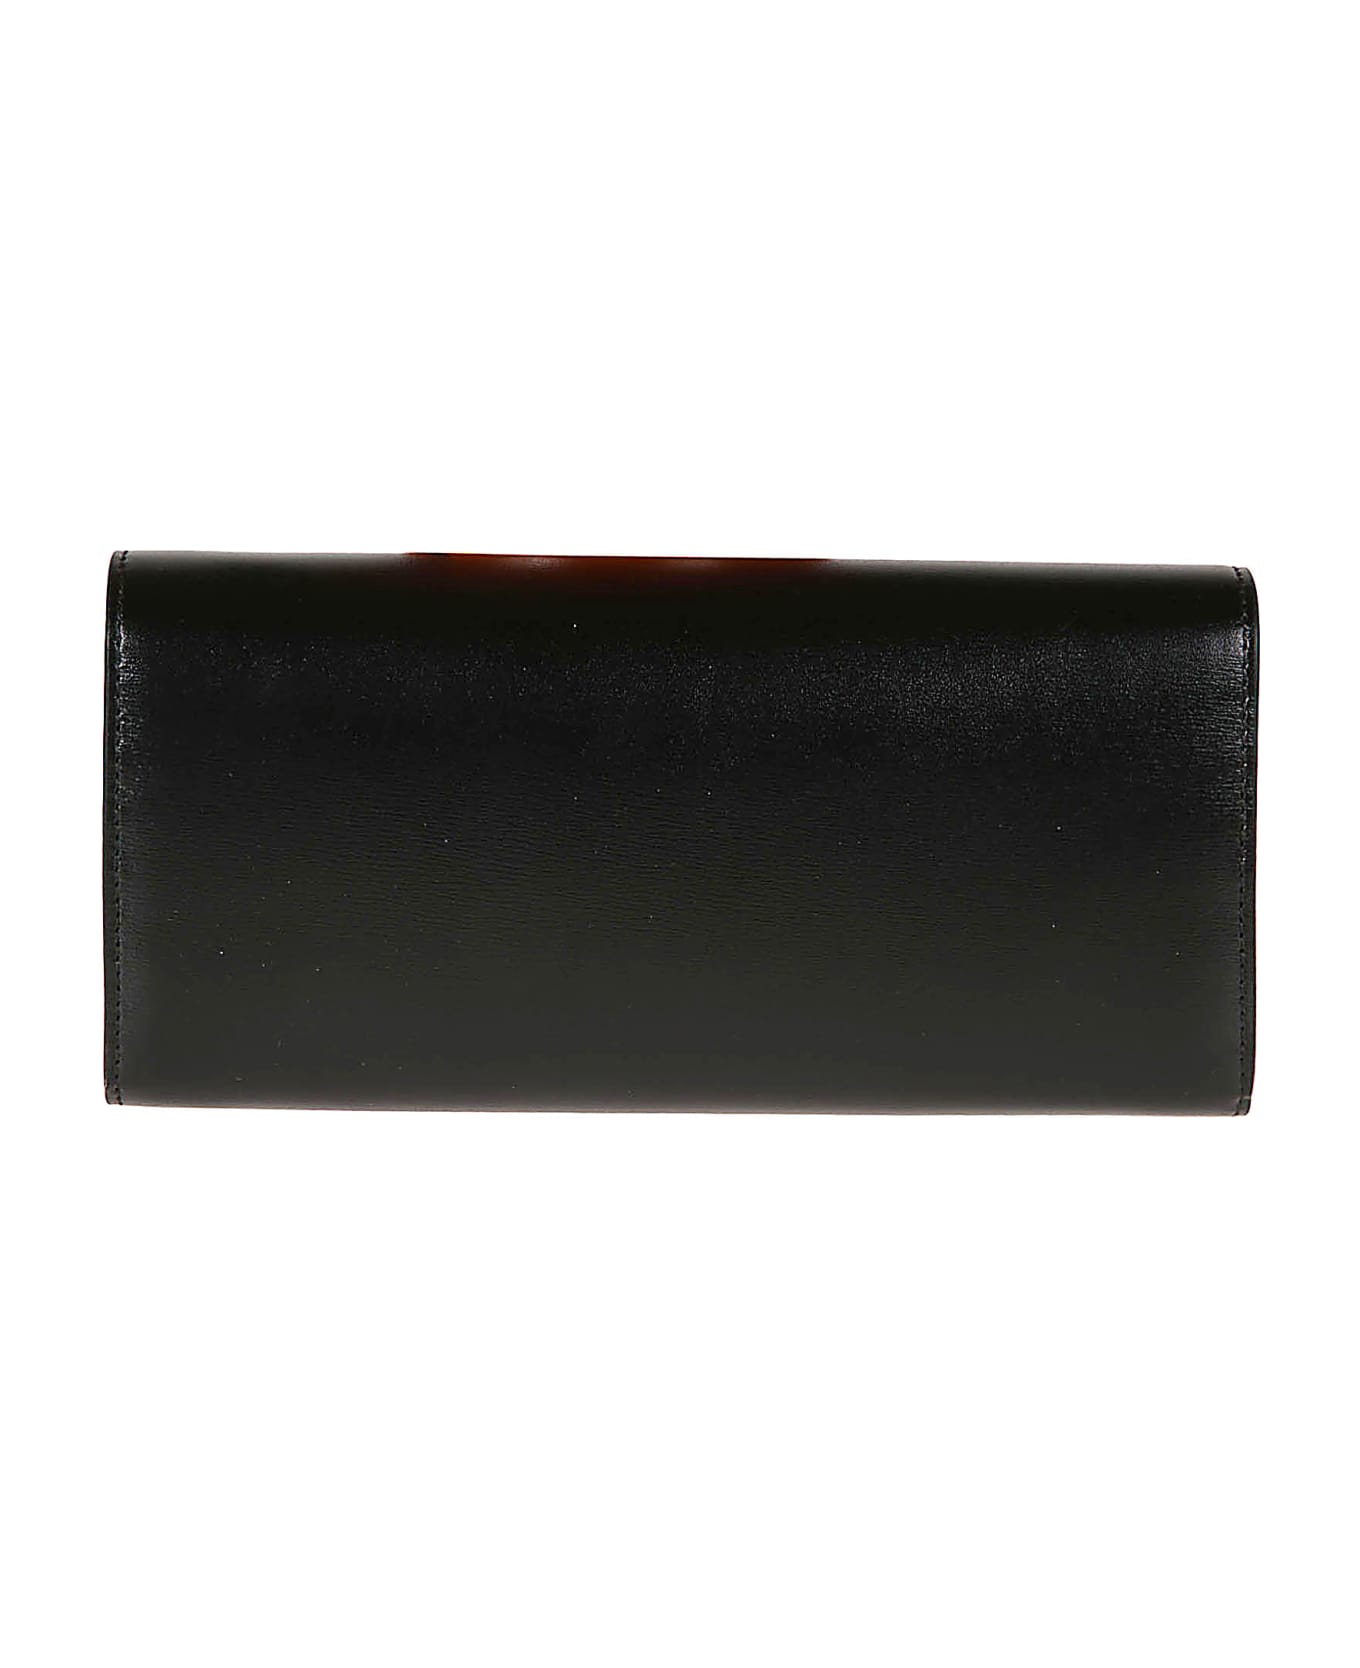 Ferragamo Fold Over Top Continental Wallet - Black 財布